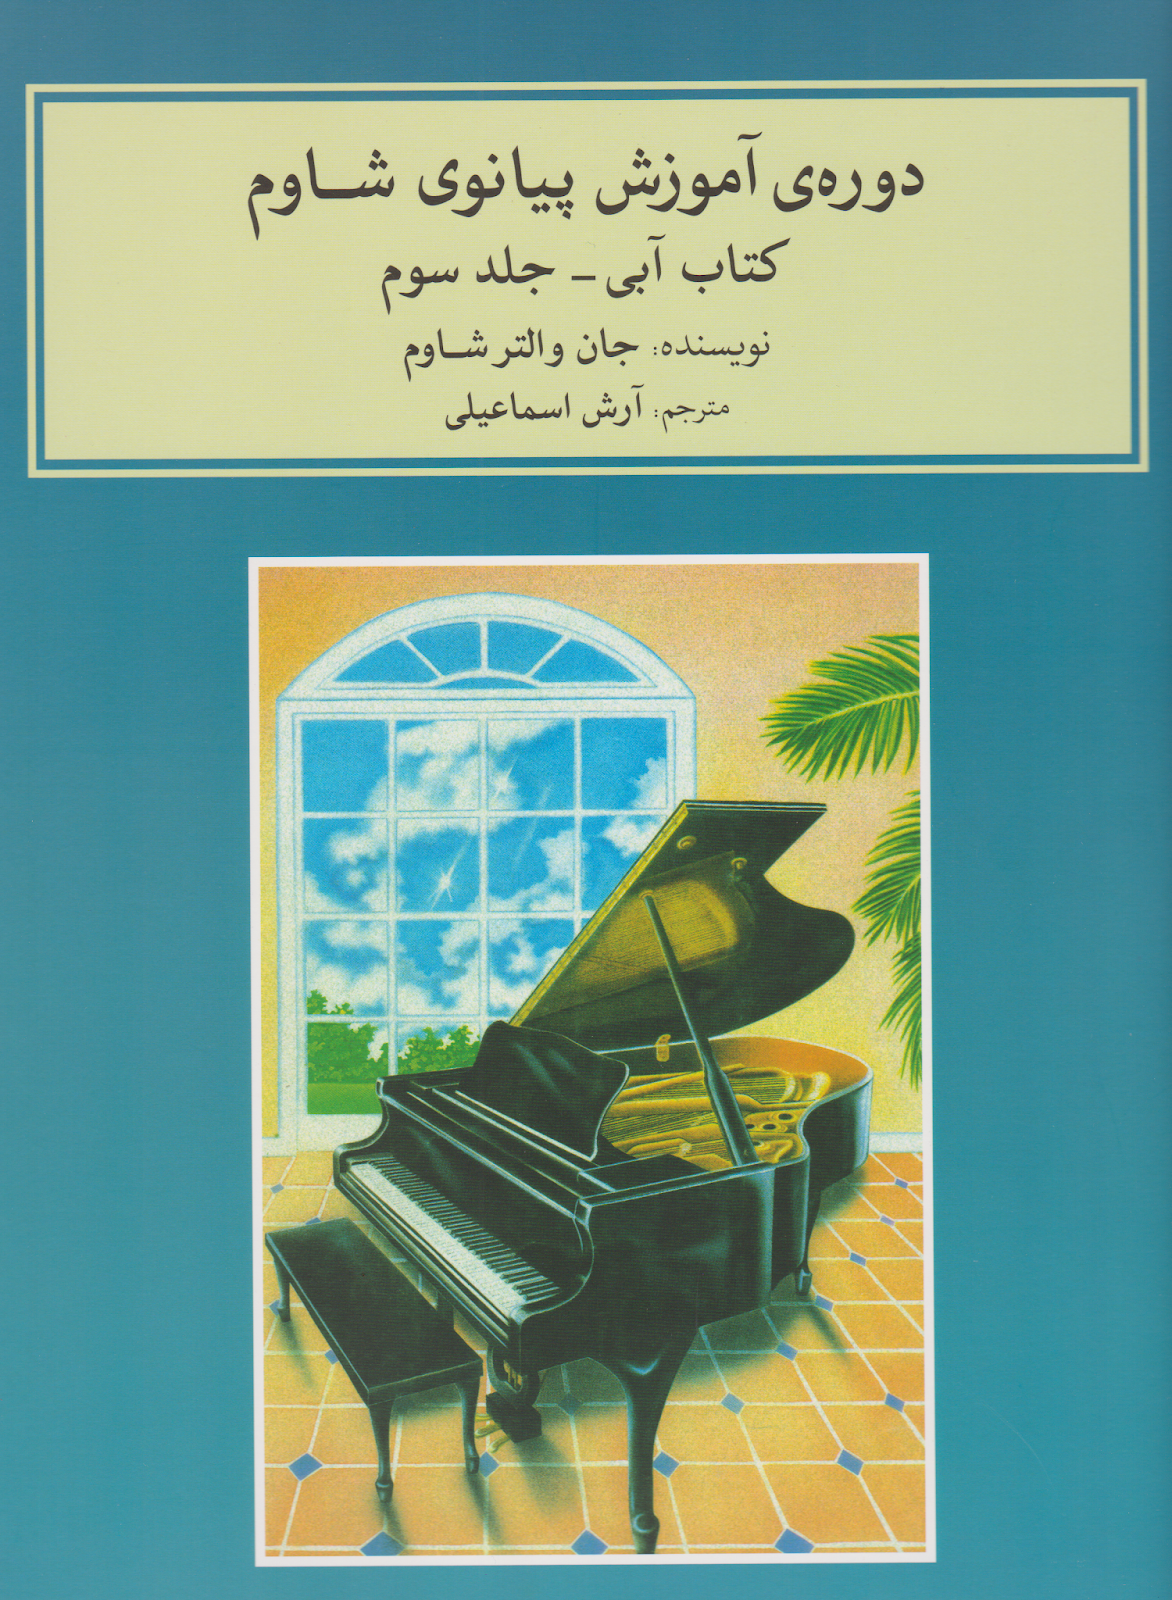 کتاب سوم دوره آموزش پیانوی شاوم آرش اسماعیلی